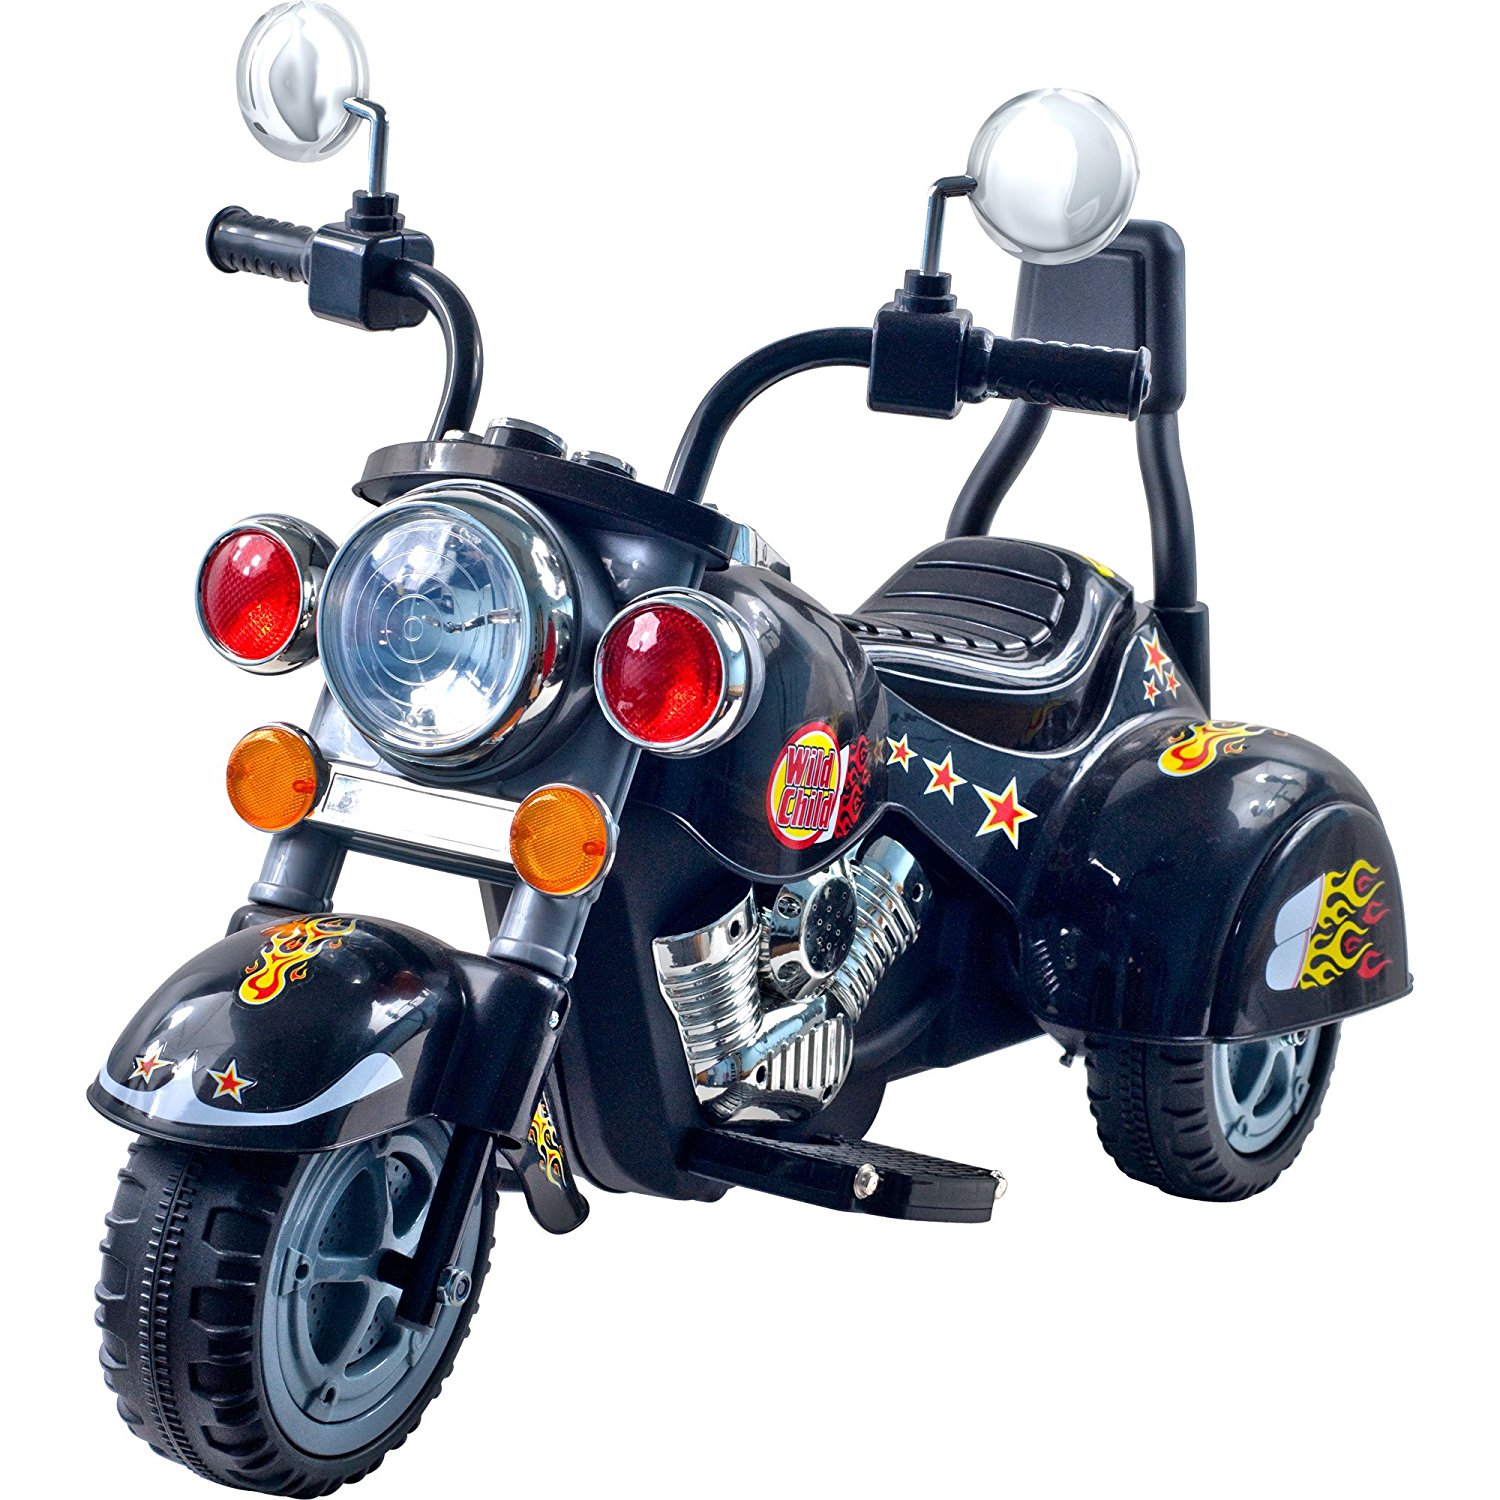 3 Wheel Chopper Trike Motorcycle for Kids - 3 wheel bike for kids